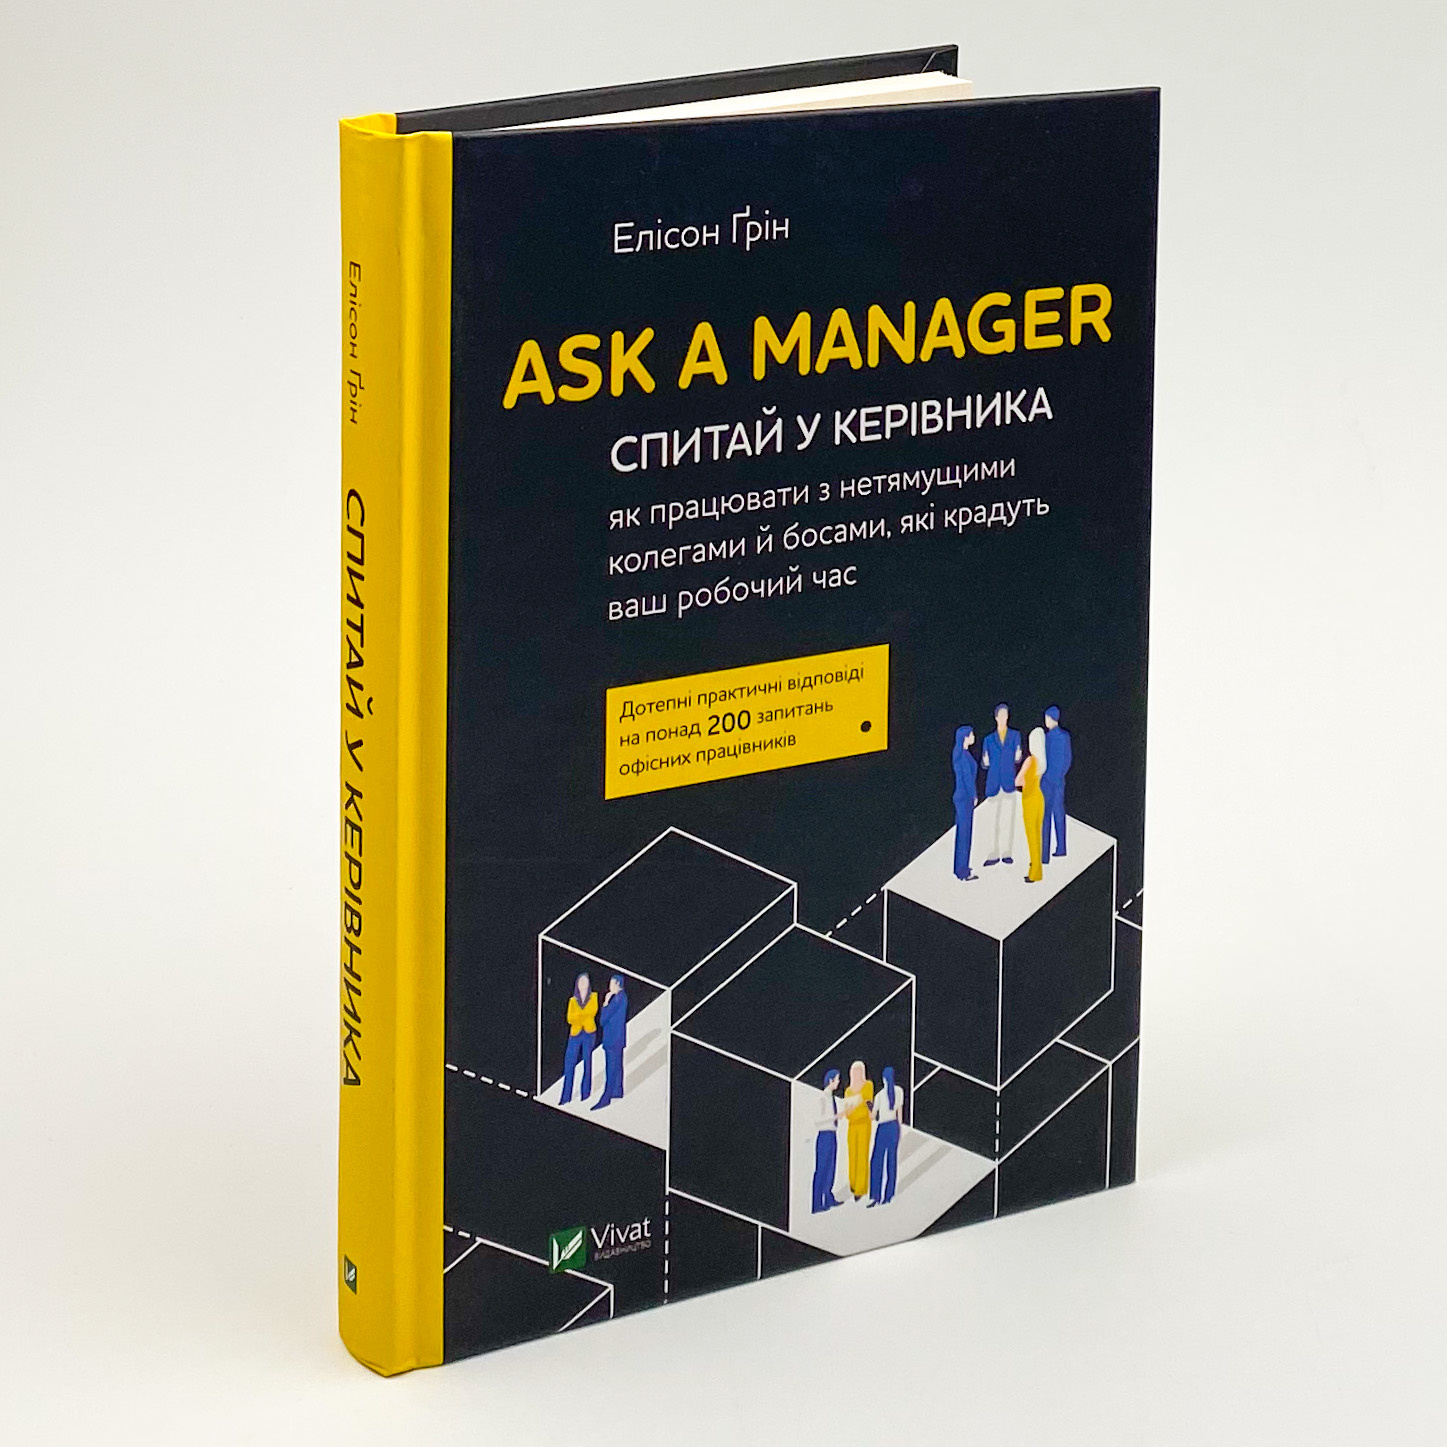 Ask a Manager. Спитай у керівника: як працювати з нетямущими колегами й босами, які крадуть ваш робочий час. Автор — Ґрін Елісон. 